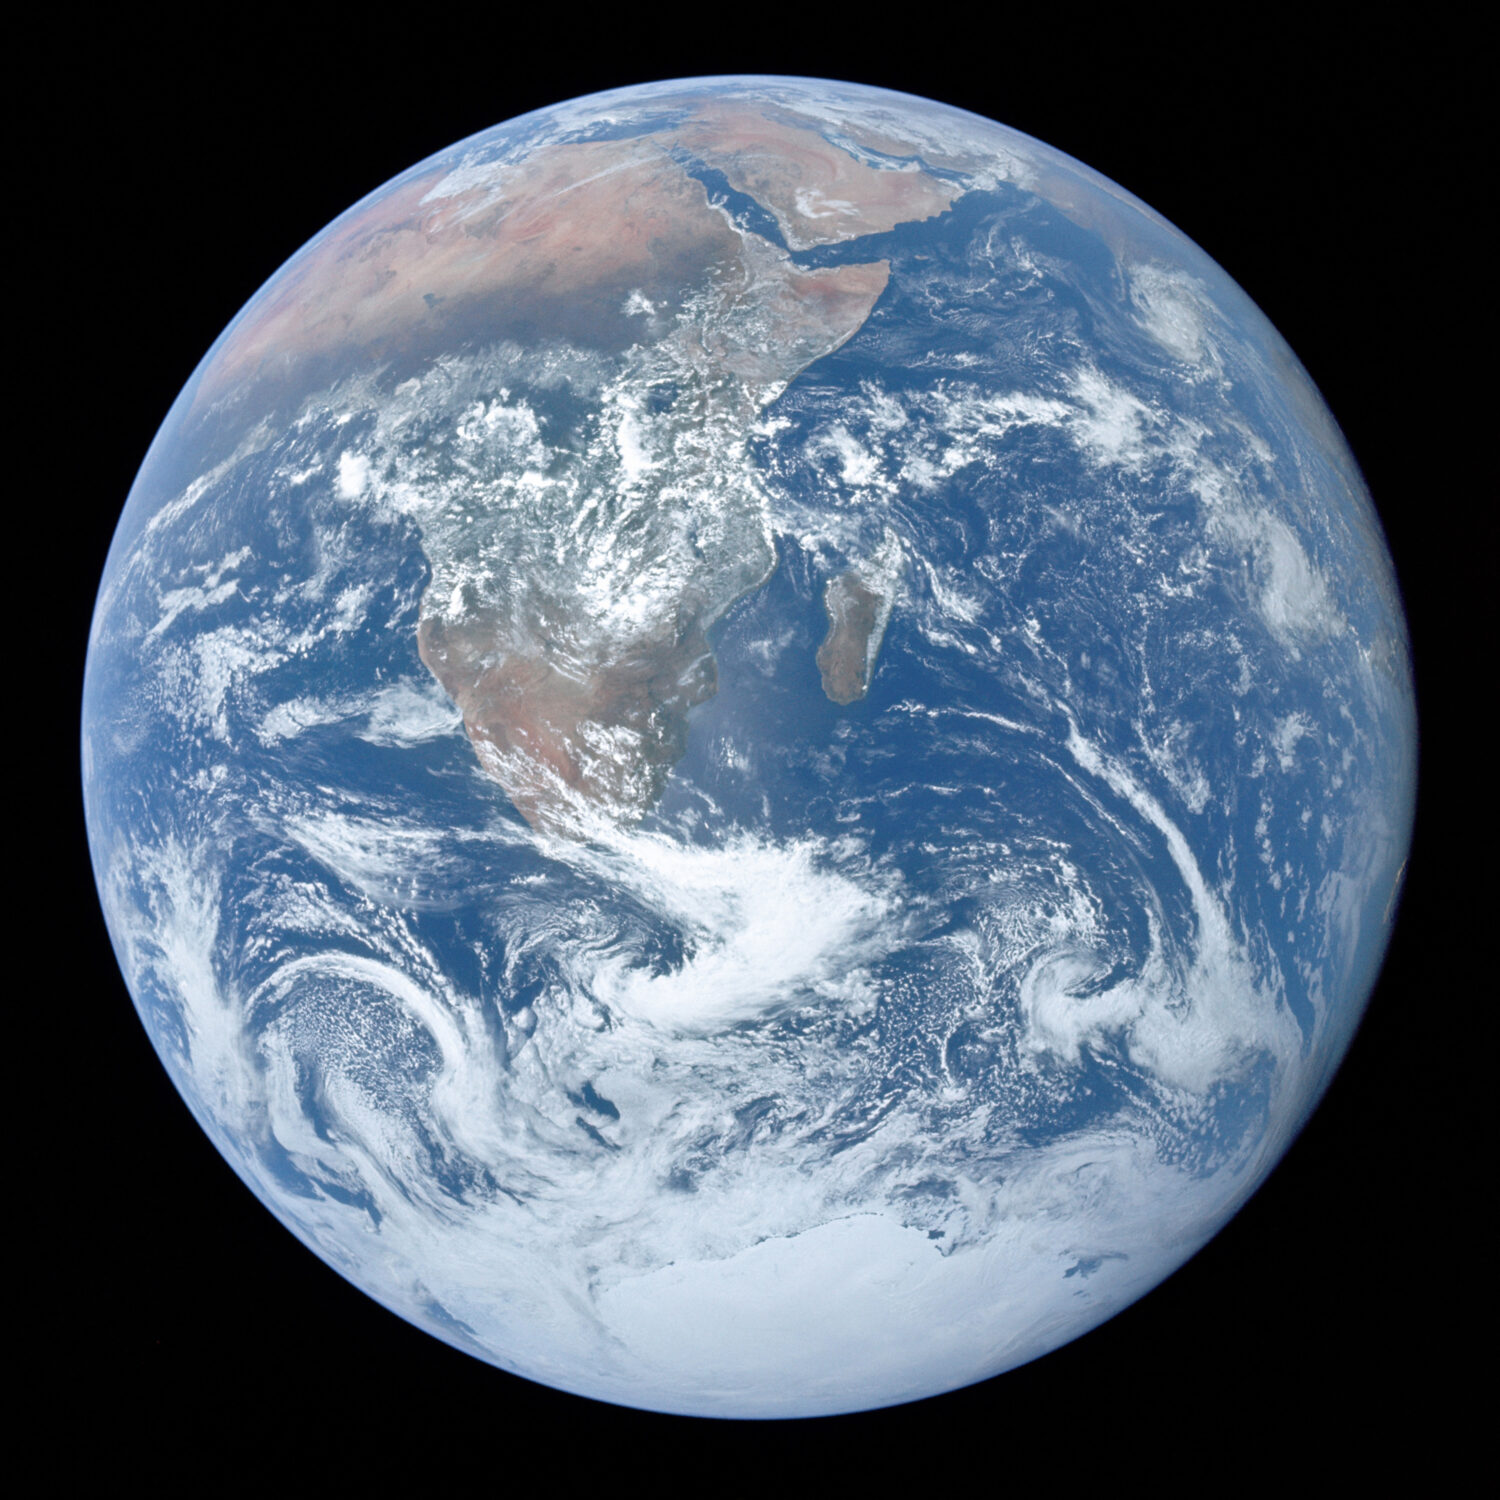 La photo nous montre la Terre prise de l'espace. Le globe est au milieu d'un carré noir. La photo montre l'Afrique, l'Antarctique et la péninsule arabique : les continents sont vus en brun-vert sous un couvert de nuages blancs, sauf l'Antartique qui couvre toute la portion sud du globe de blanc. Le cercle terrestre présente une majorité de bleu, les océans, eux aussi partiellement couverts de nuages blancs. 